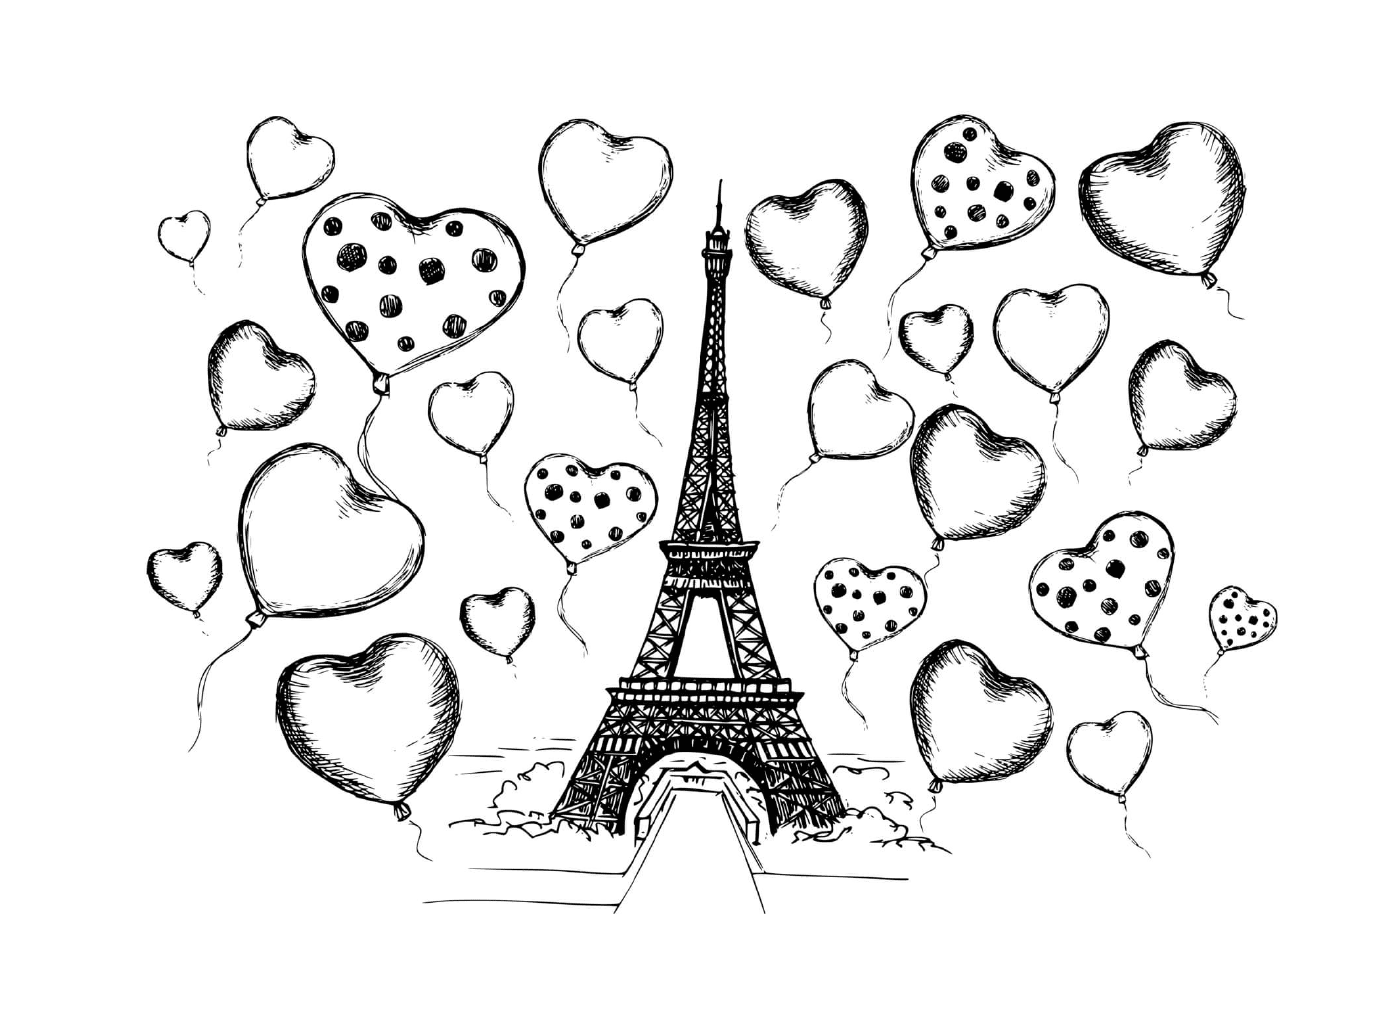  Torre Eiffel rodeada de corazones y globos 